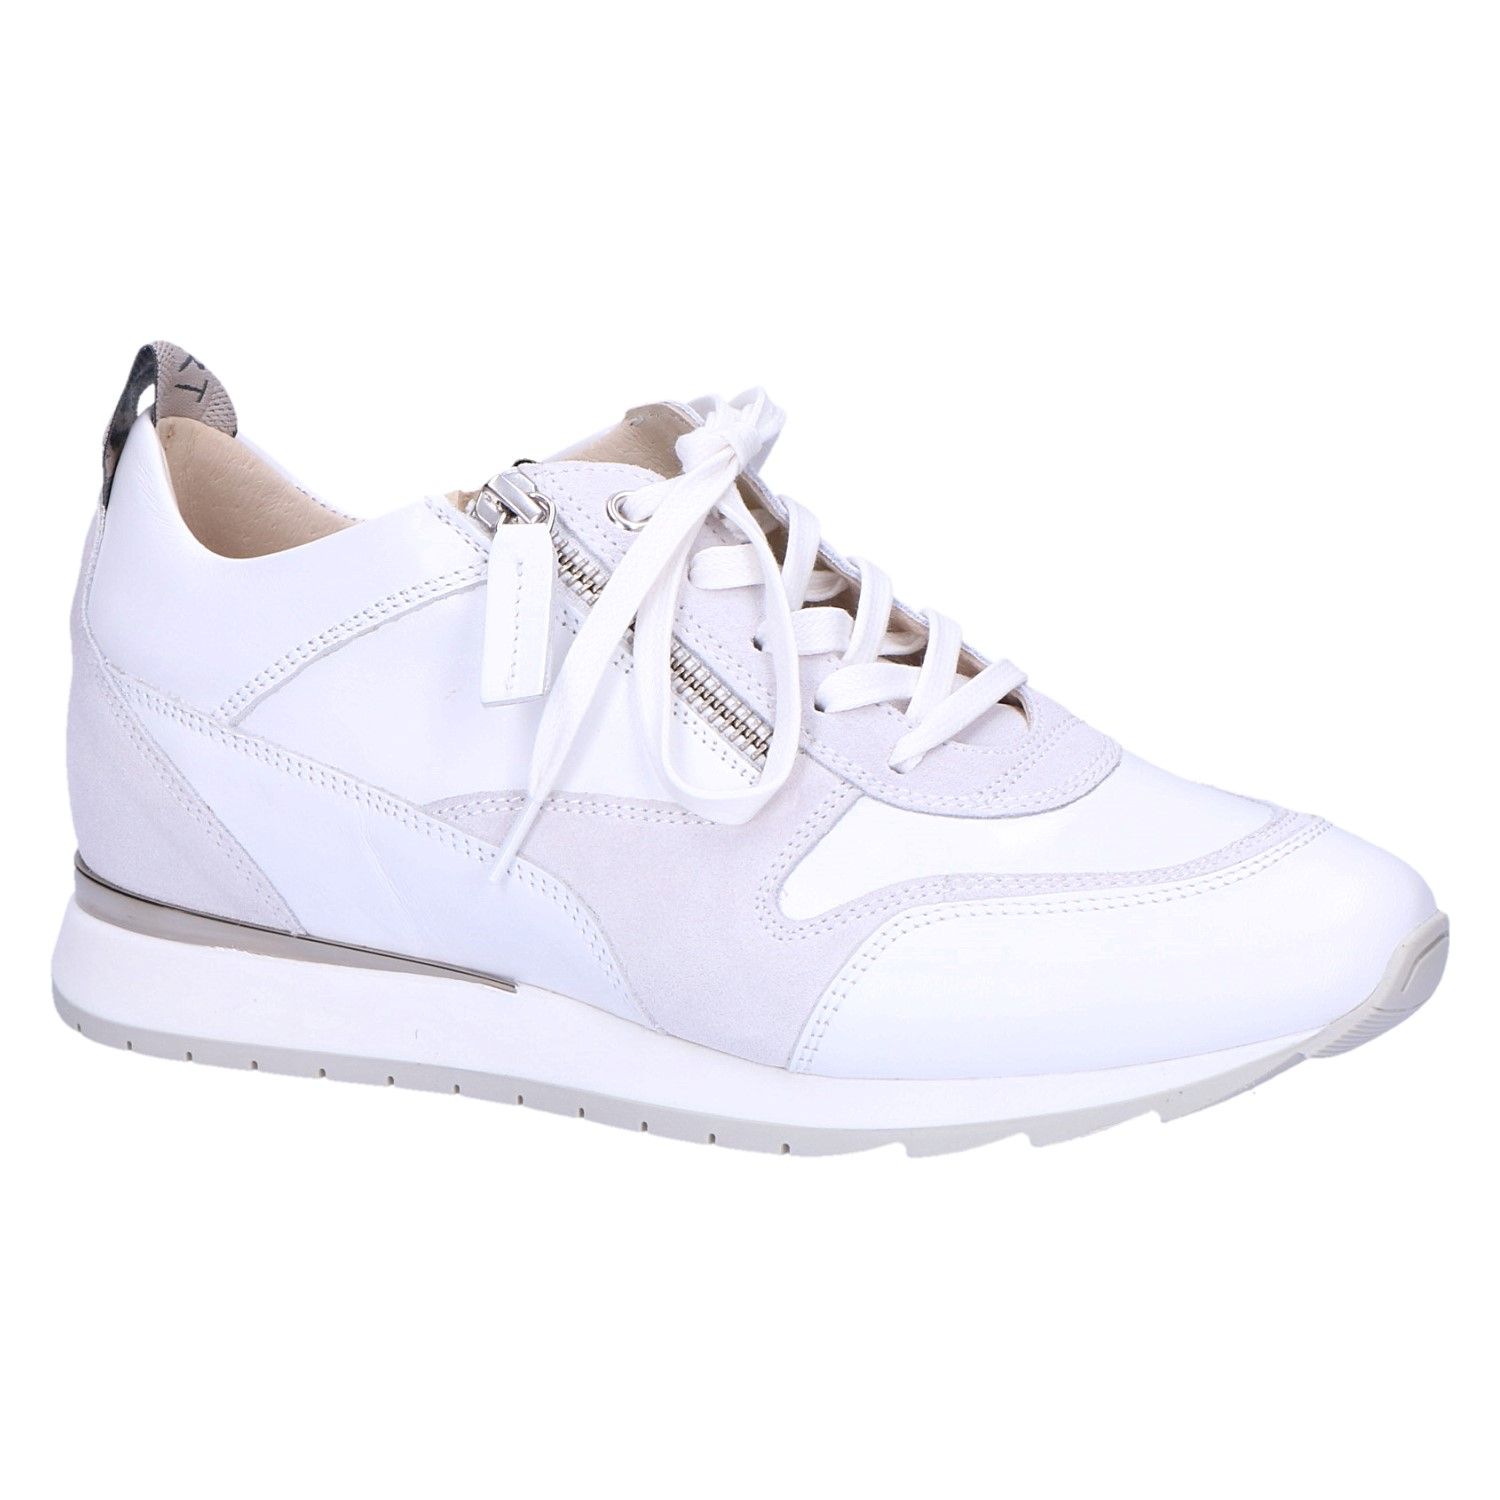 Vader fage Toestemming Staan voor DL Sport 5033 Sneaker wit/lichtgrijs leer/suede met artikelnummer 5033-wit/grijs  verkrijgbaar bij Beurskens schoenmode.